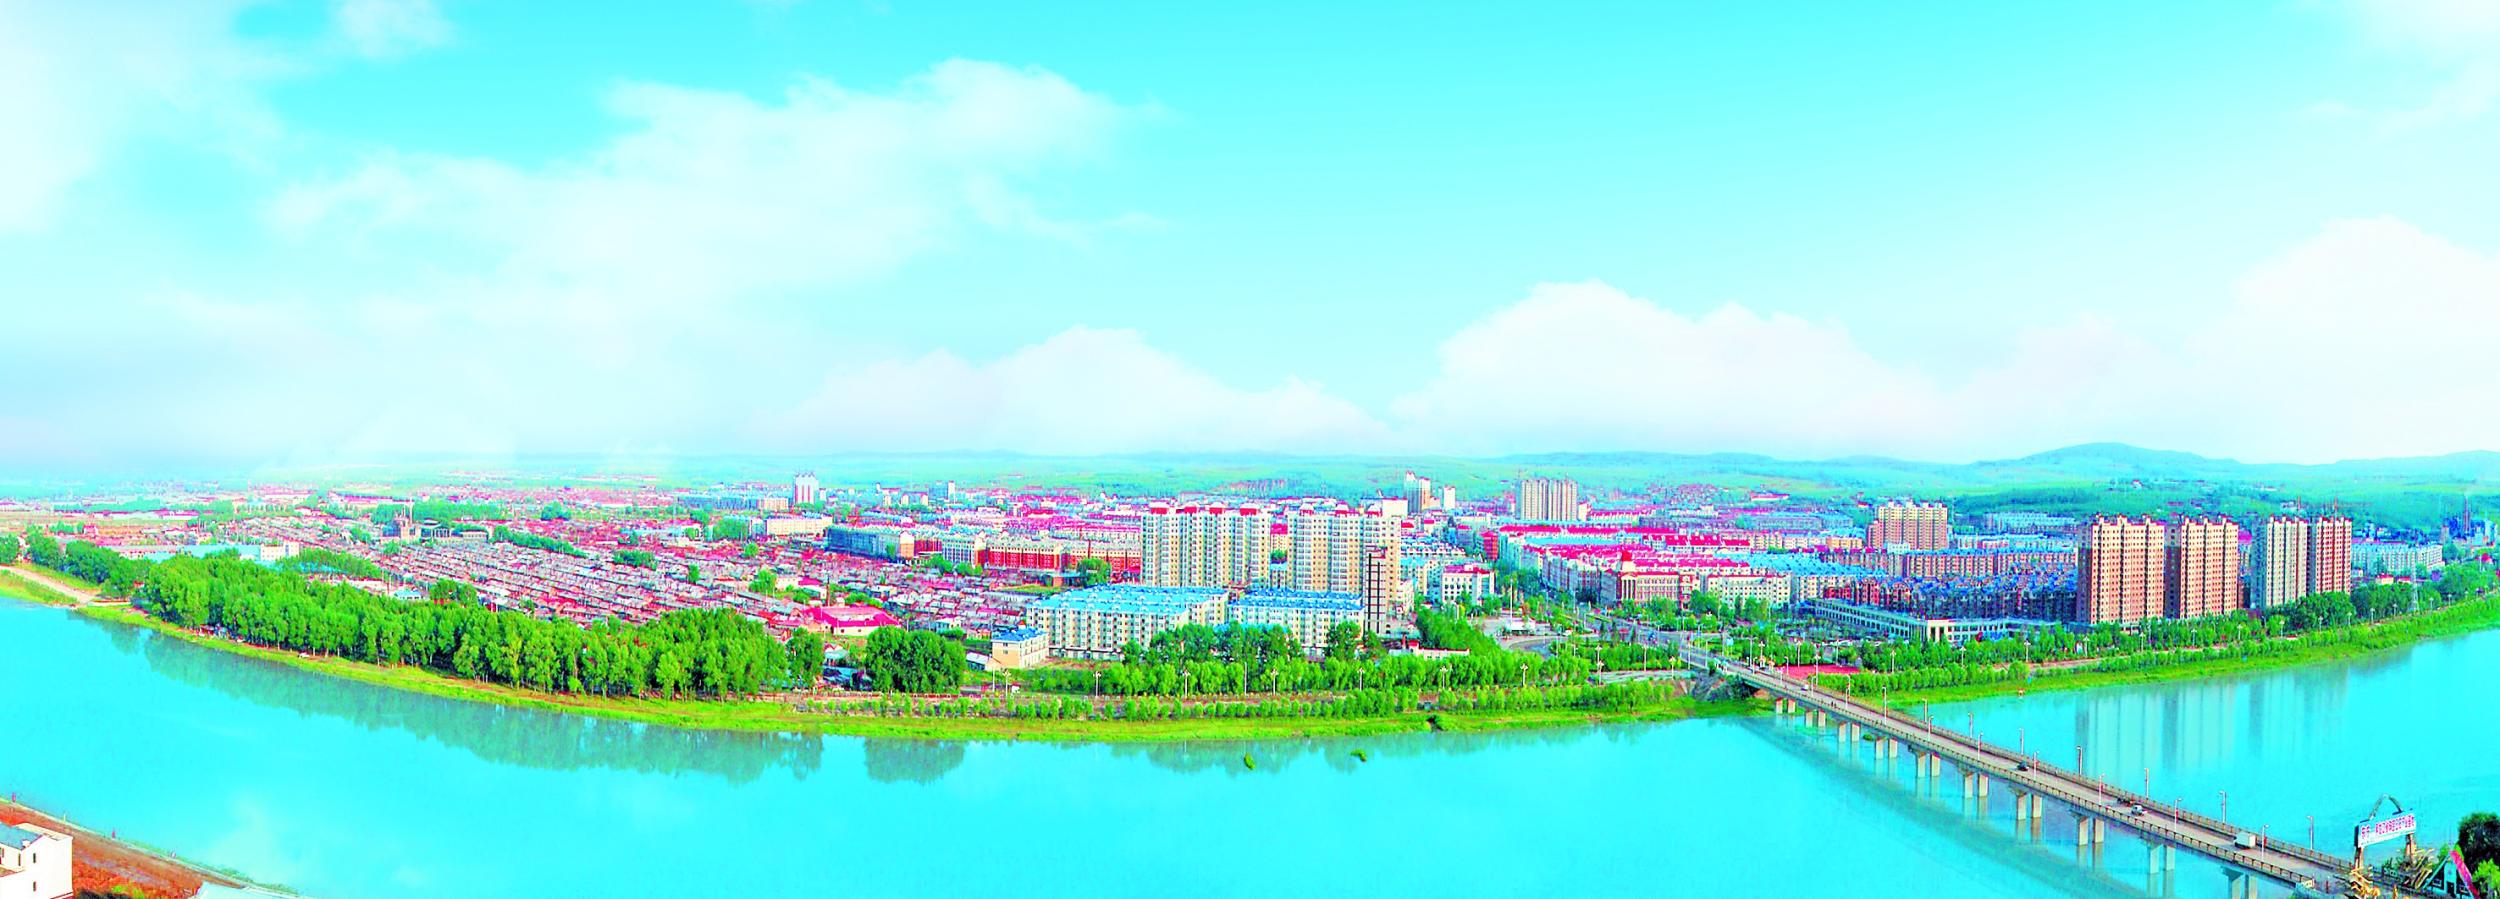 东宁市风景图片